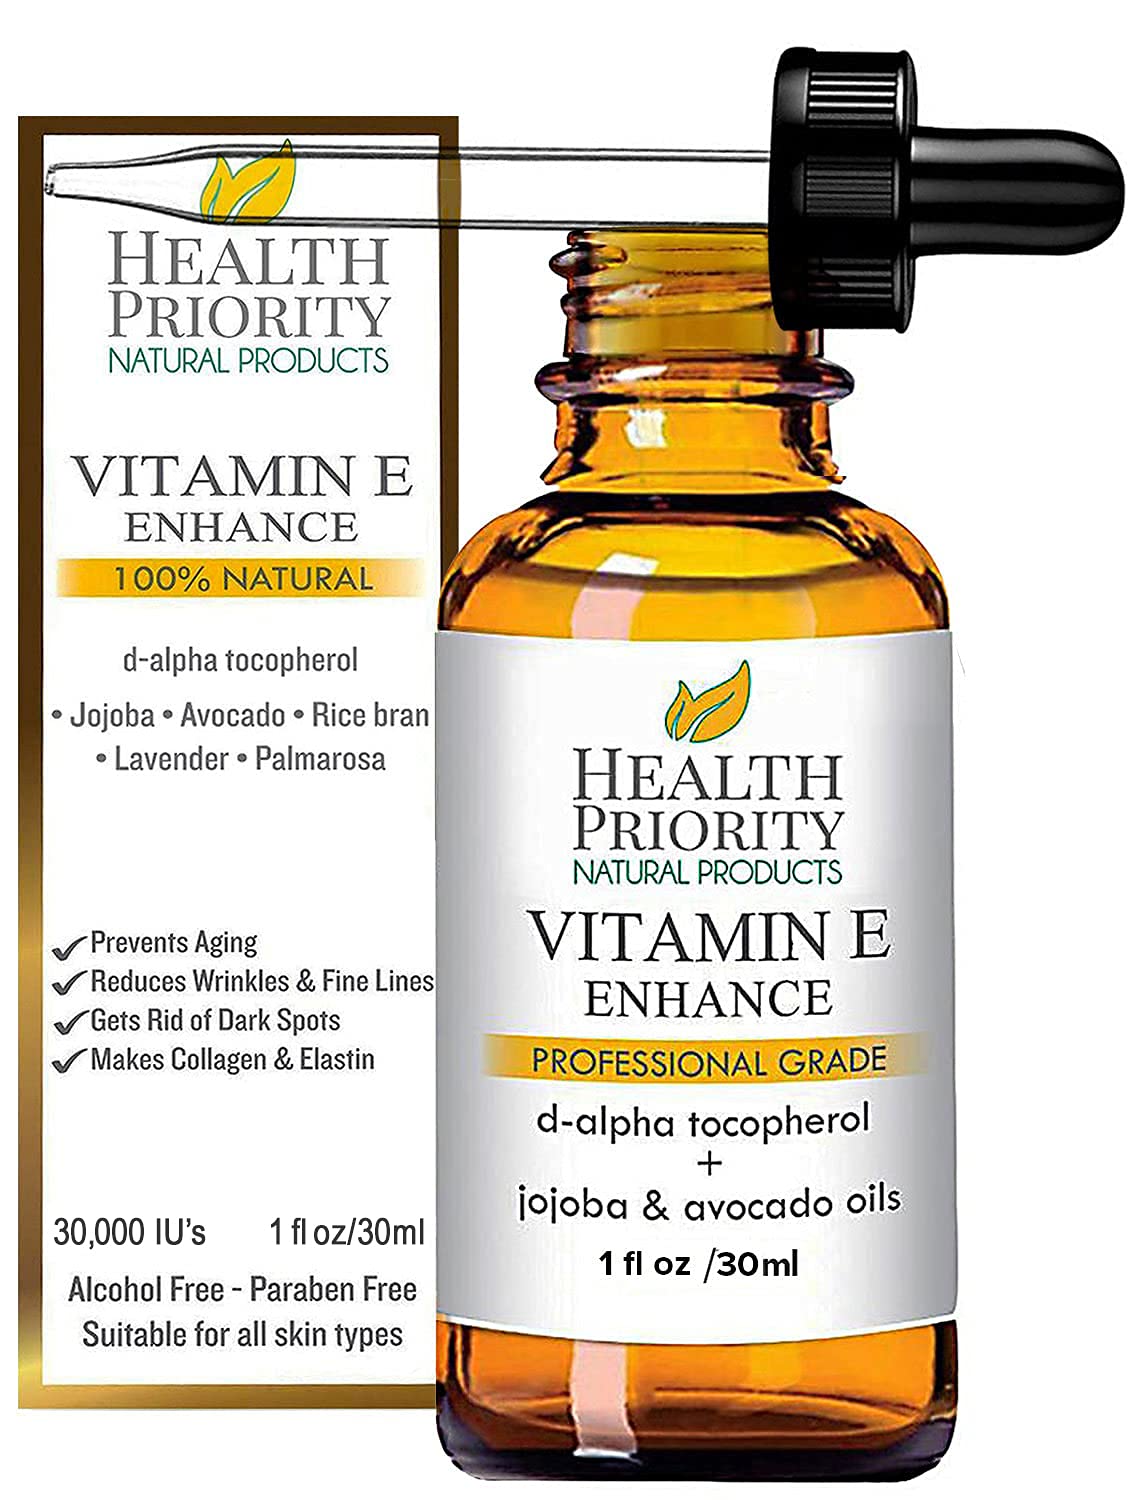 Organic Vitamin E Oil for Skin  Scars |100% Pure Natural Vitamin E Serum Hand Made in South Carolina | 15000 IU Vitamin E for Face  Hair| Non-GMO, Gluten  Cruelty Free, Vegan | Unscented 1 Fl Oz